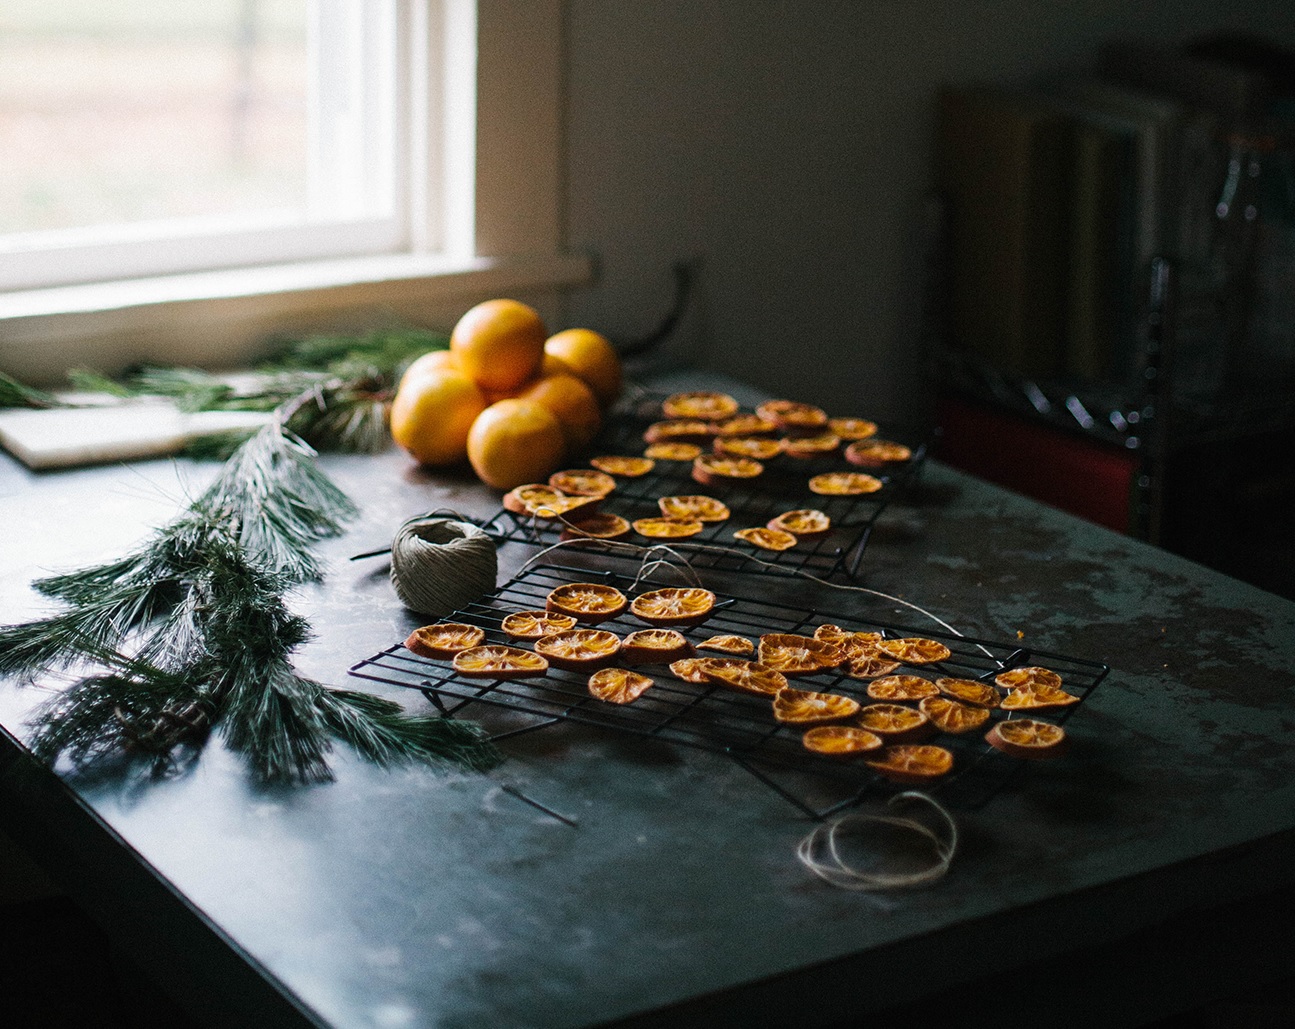 Tự làm vòng nguyệt quế cam quế đón Giáng sinh: Đẹp, rẻ và dễ như ăn bánh - Ảnh 6